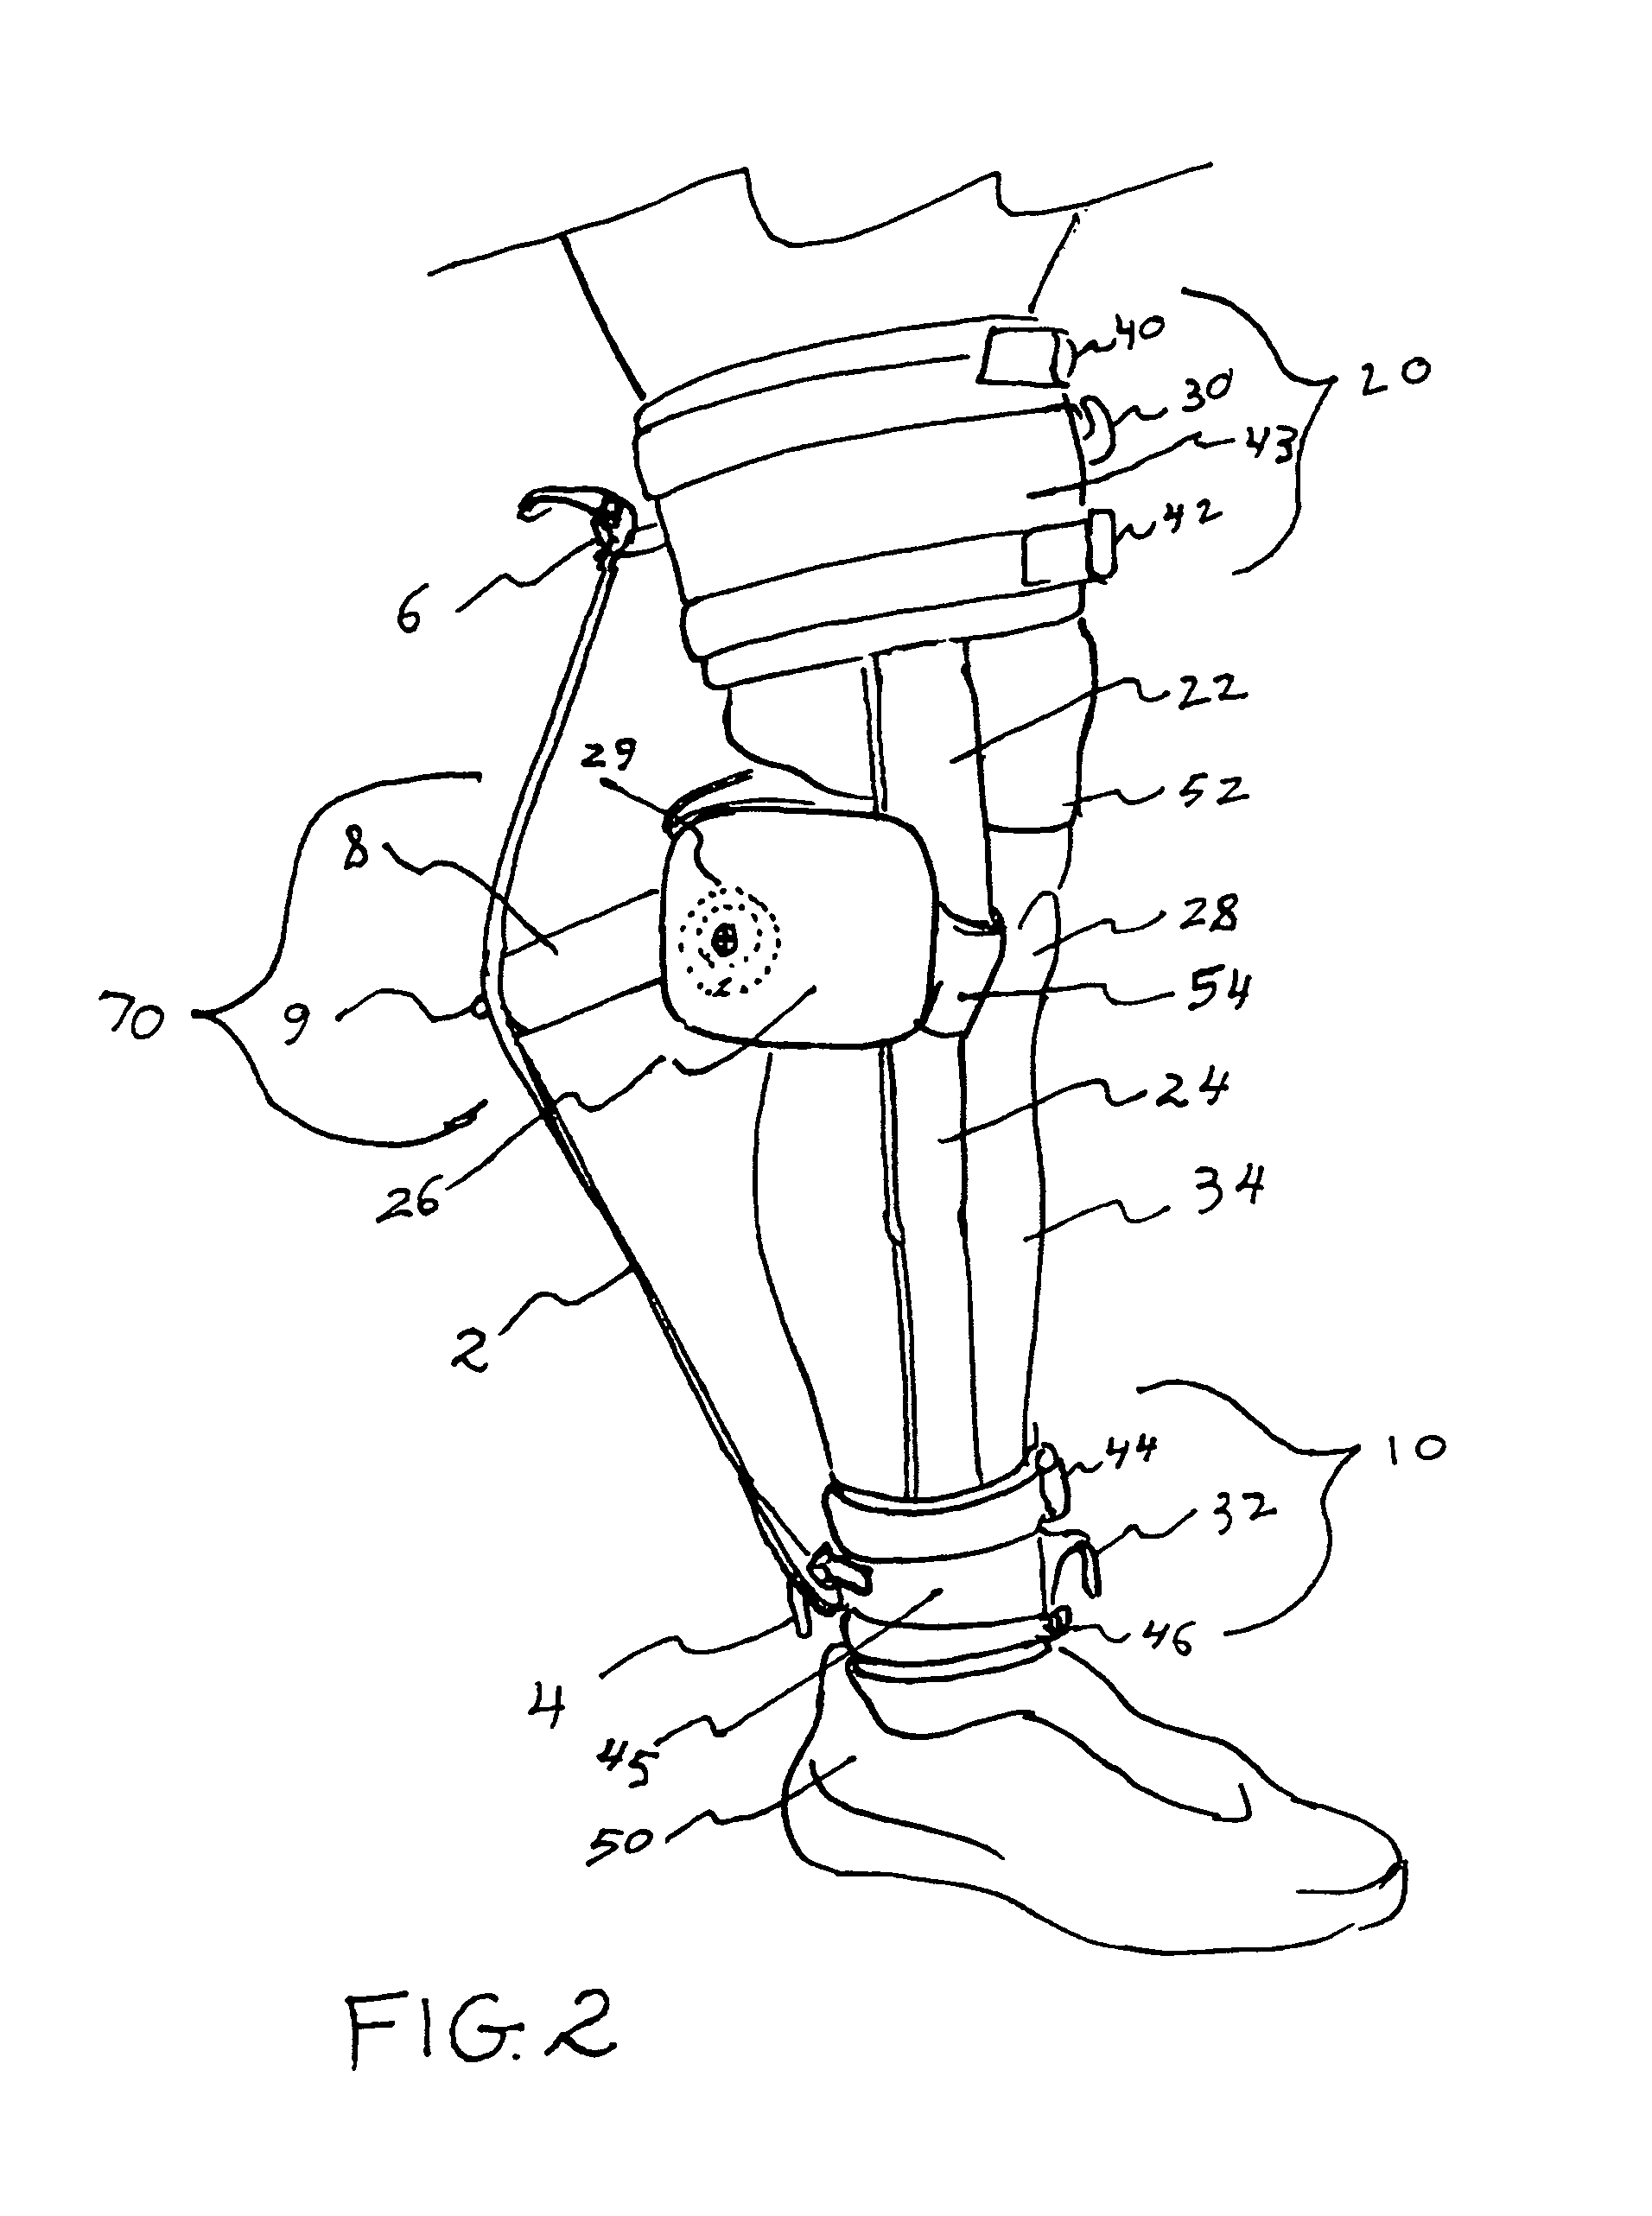 Knee rehabilitation exercise device